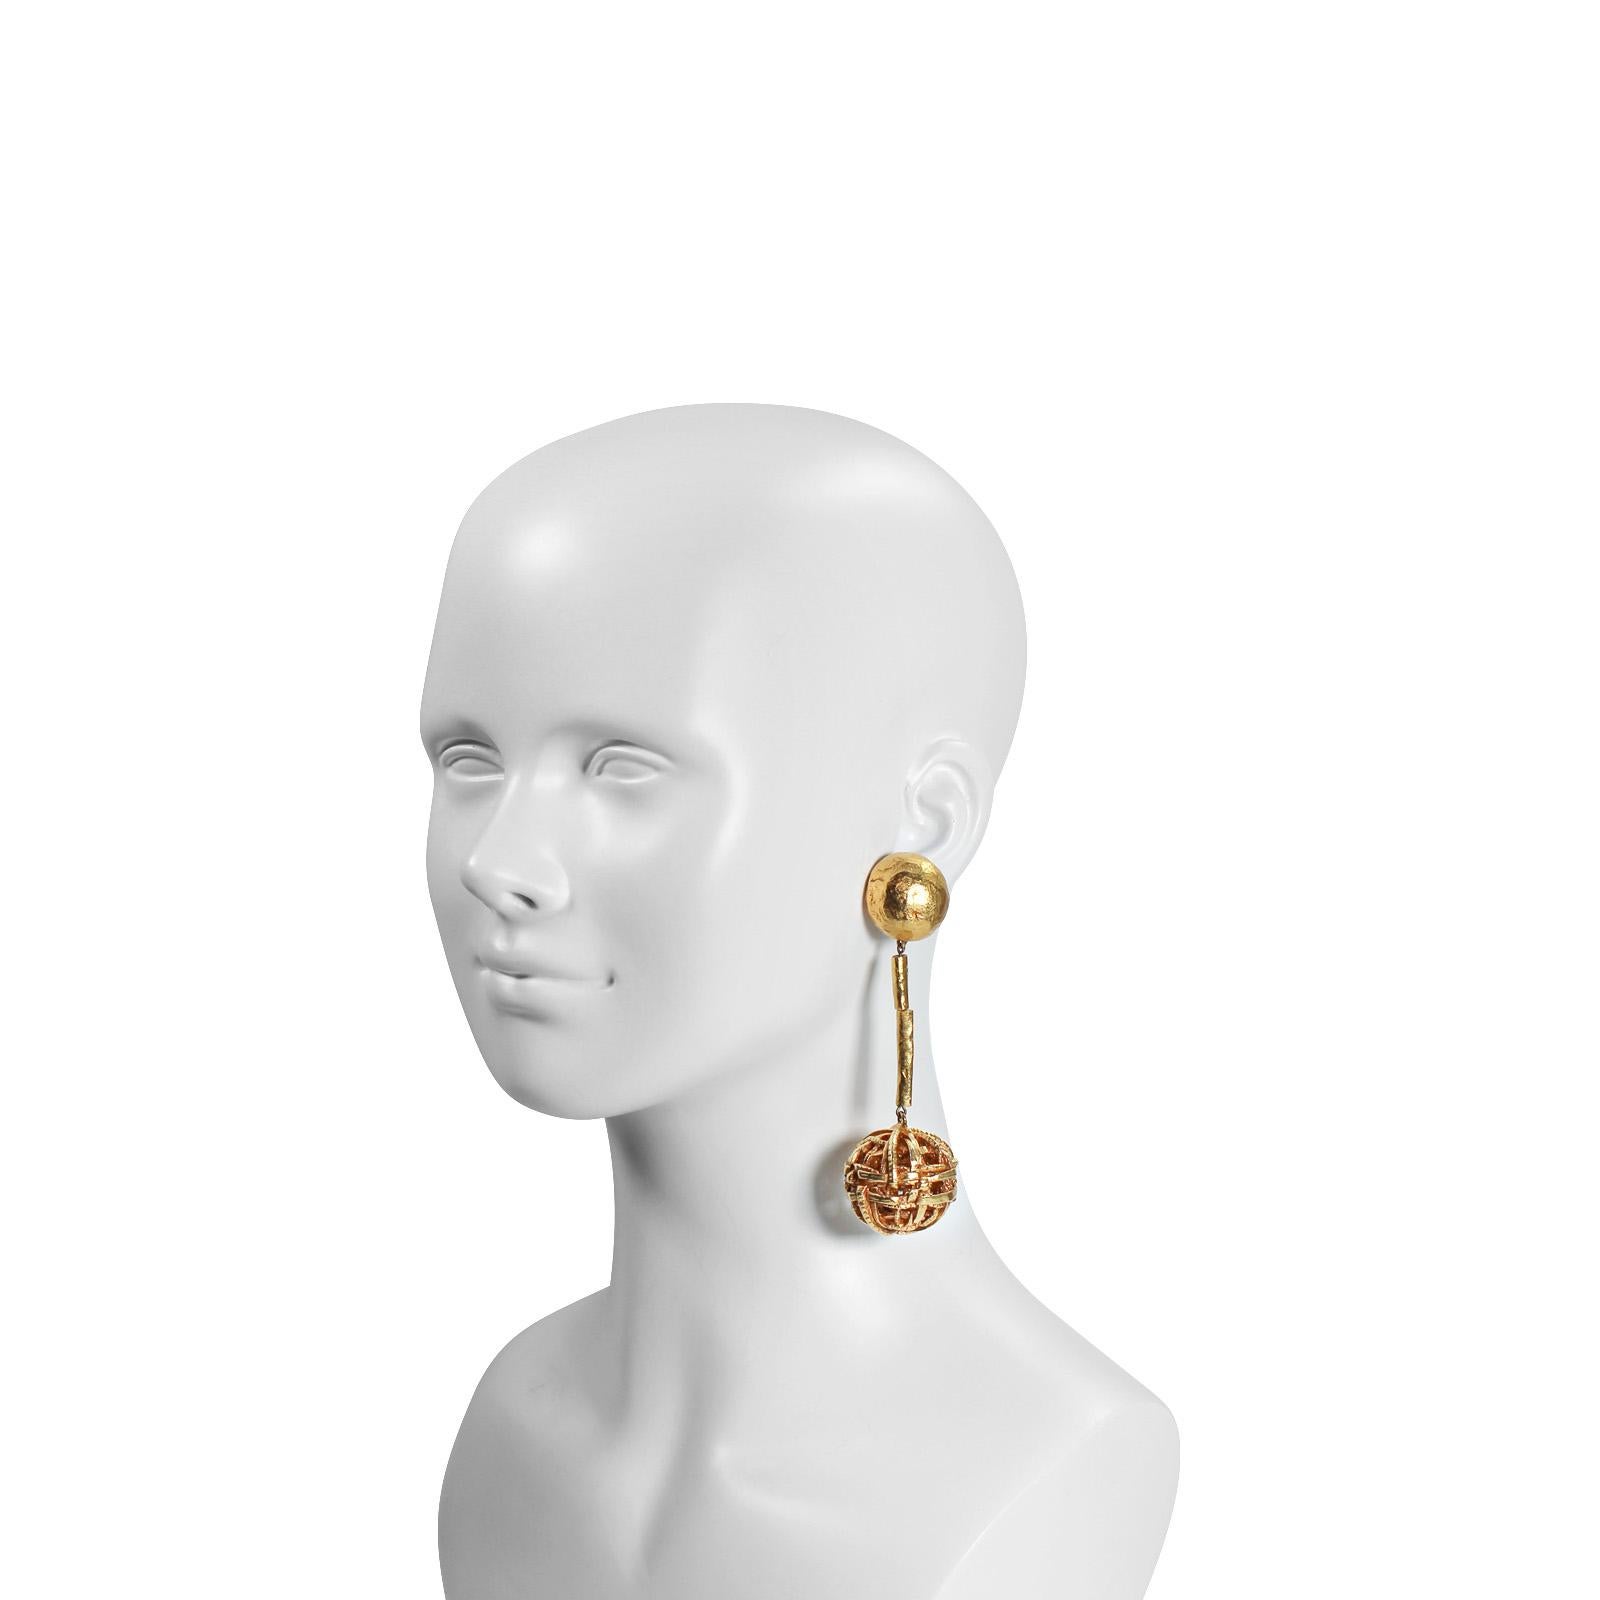 Vintage Christian Lacroix Gold Tone Dangling Ball Ohrring mit 2 Bars aus Metall, die mit Ball am Ende befestigt manipuliert werden können.  Also Lacroix!
Diese sind sehr schick. Sie sehen einfach aus, ohne zu schreien, aber wenn man sie anhat, wow.